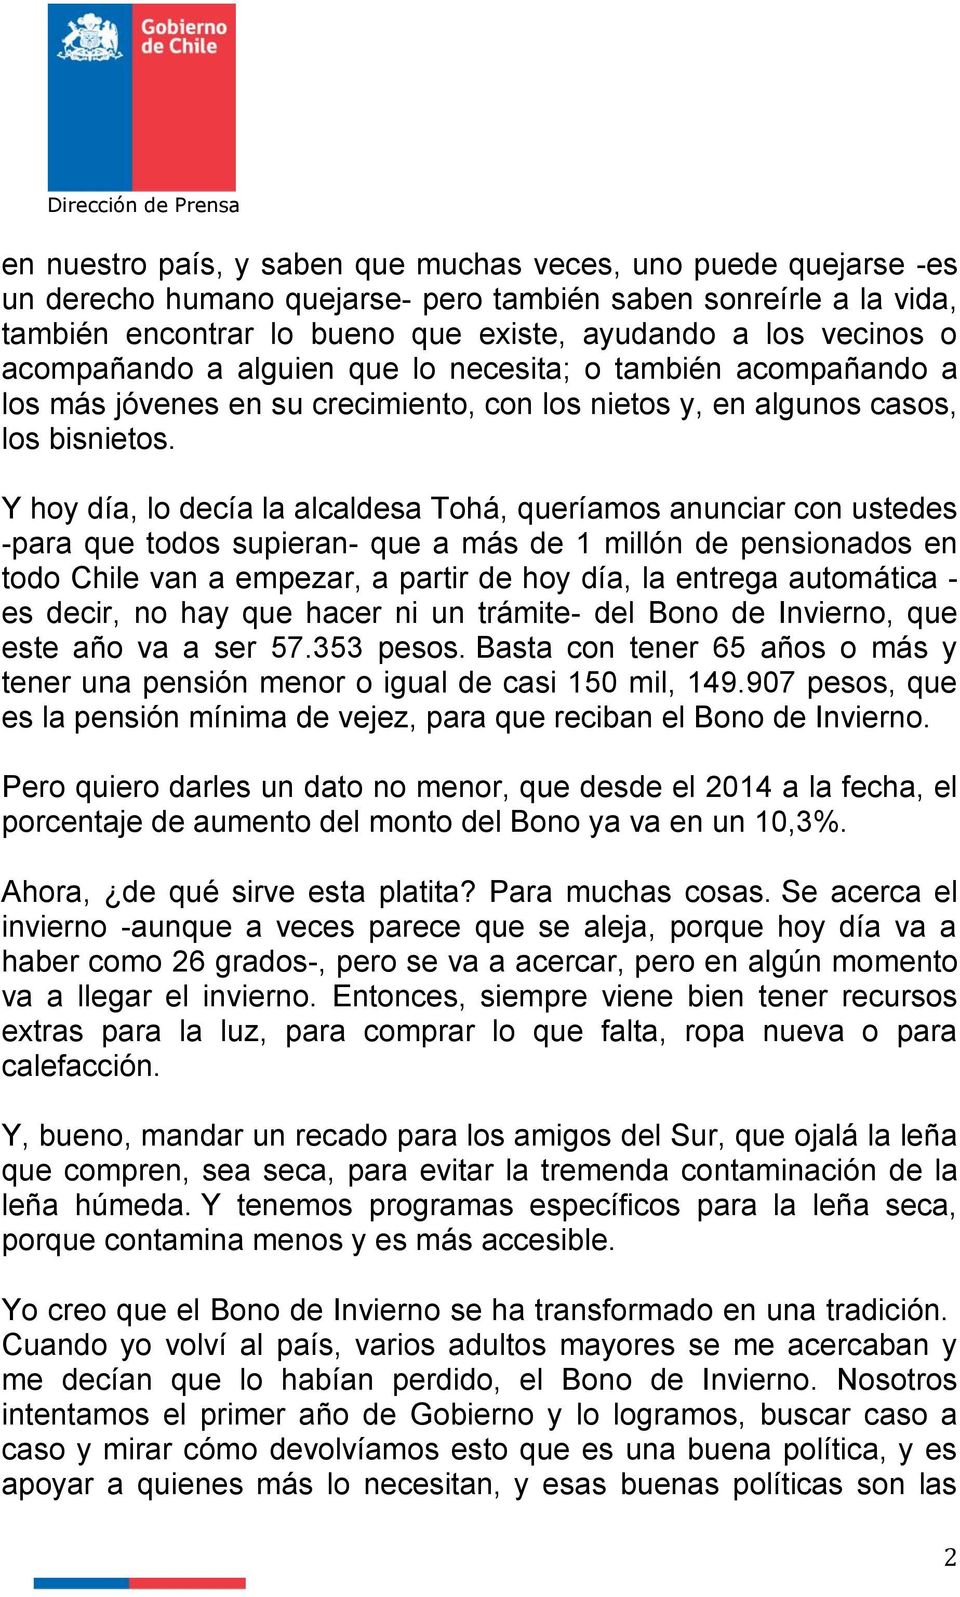 Y hoy día, lo decía la alcaldesa Tohá, queríamos anunciar con ustedes -para que todos supieran- que a más de 1 millón de pensionados en todo Chile van a empezar, a partir de hoy día, la entrega